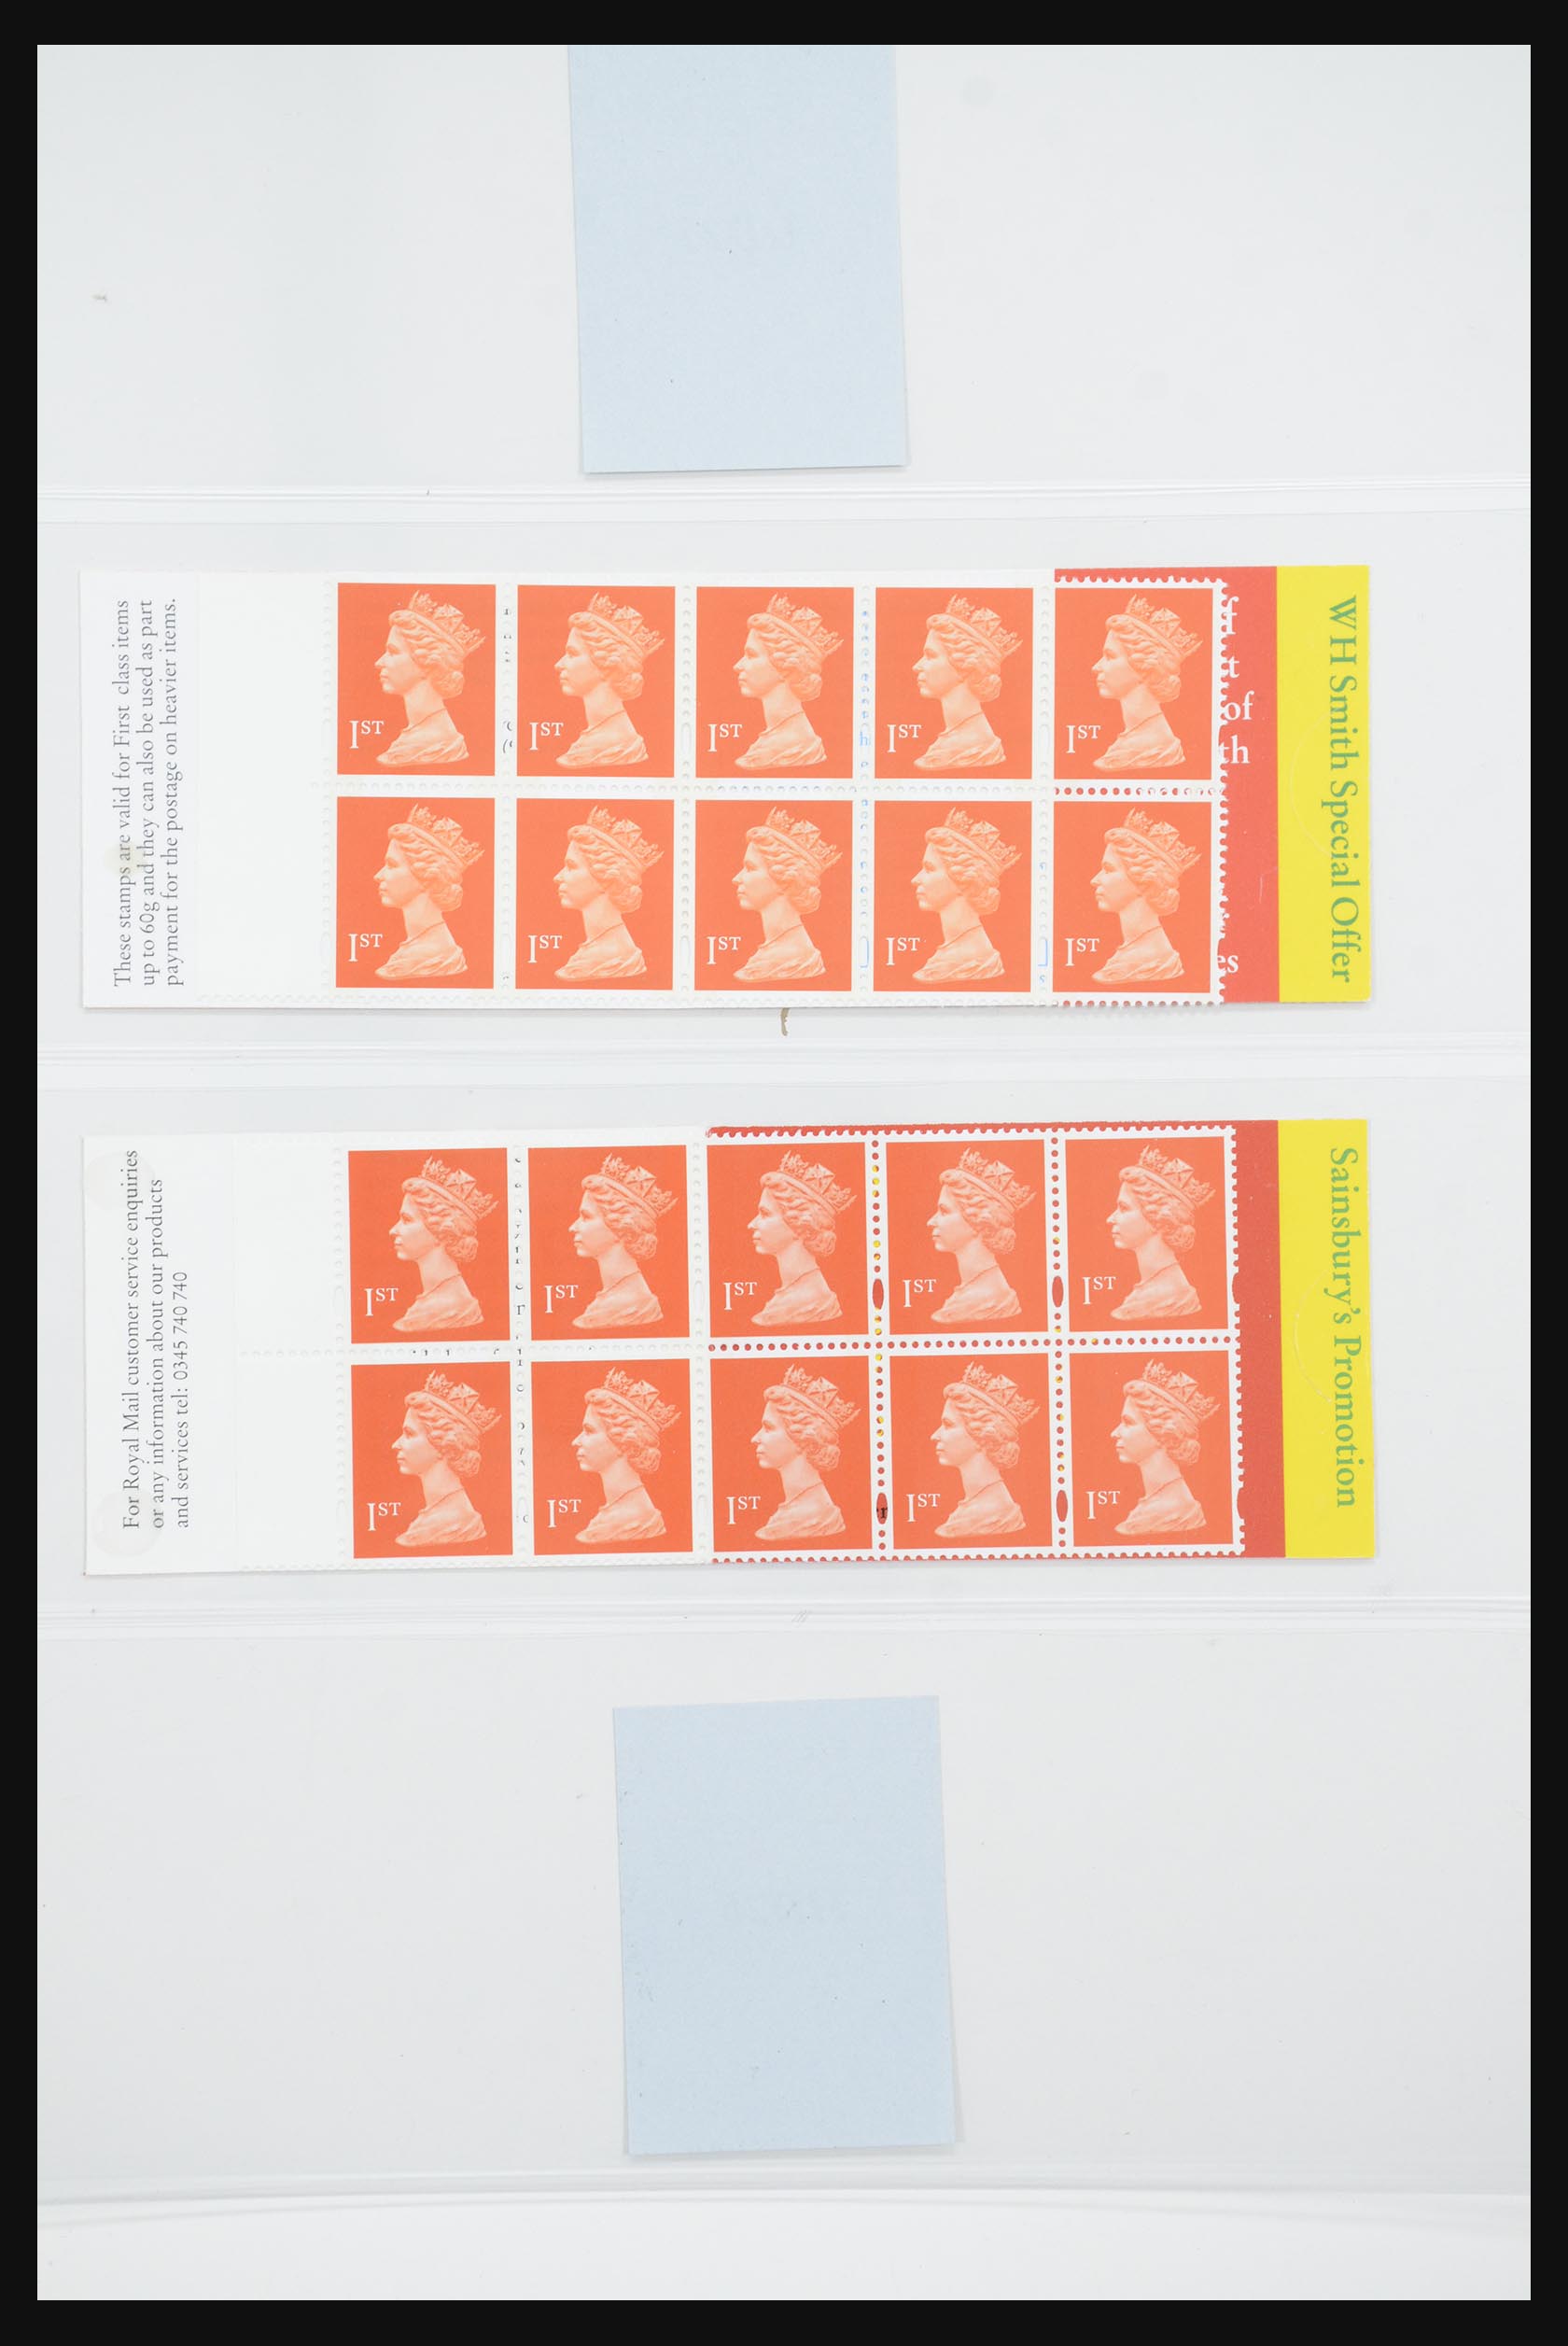 31960 140 - 31960 Engeland postzegelboekjes 1989-2000.